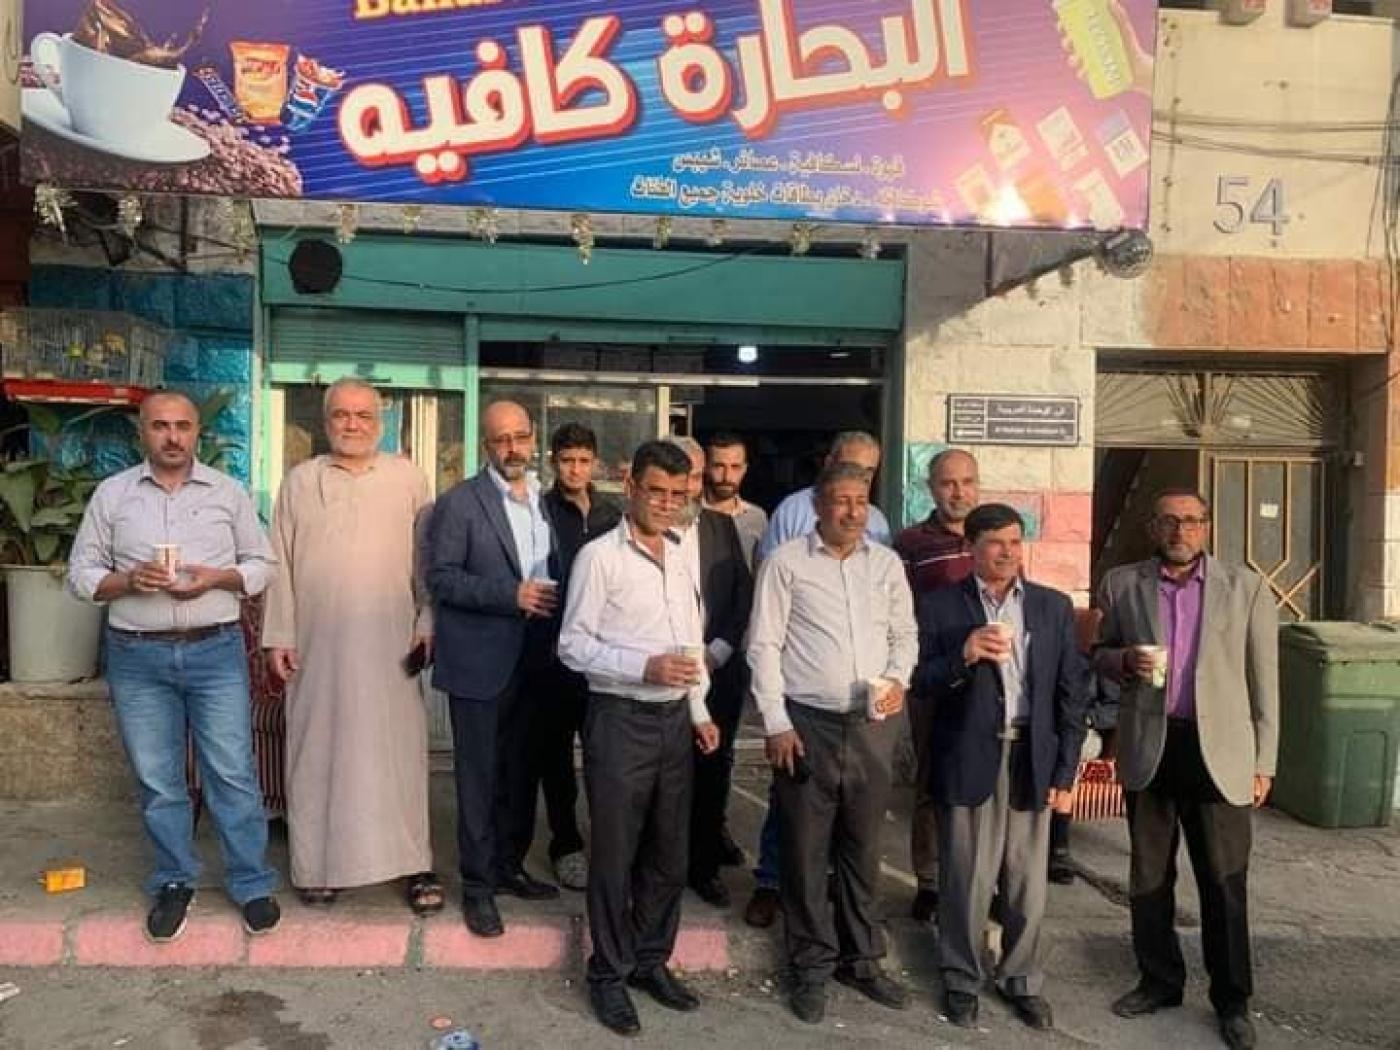 Des activistes politiques devant le café de Kameel al-Zoubi dans le quartier de Ramtha, réunis pour acheter des boissons en signe de soutien au propriétaire emprisonné (MEE/Jahid Abu Baidar)